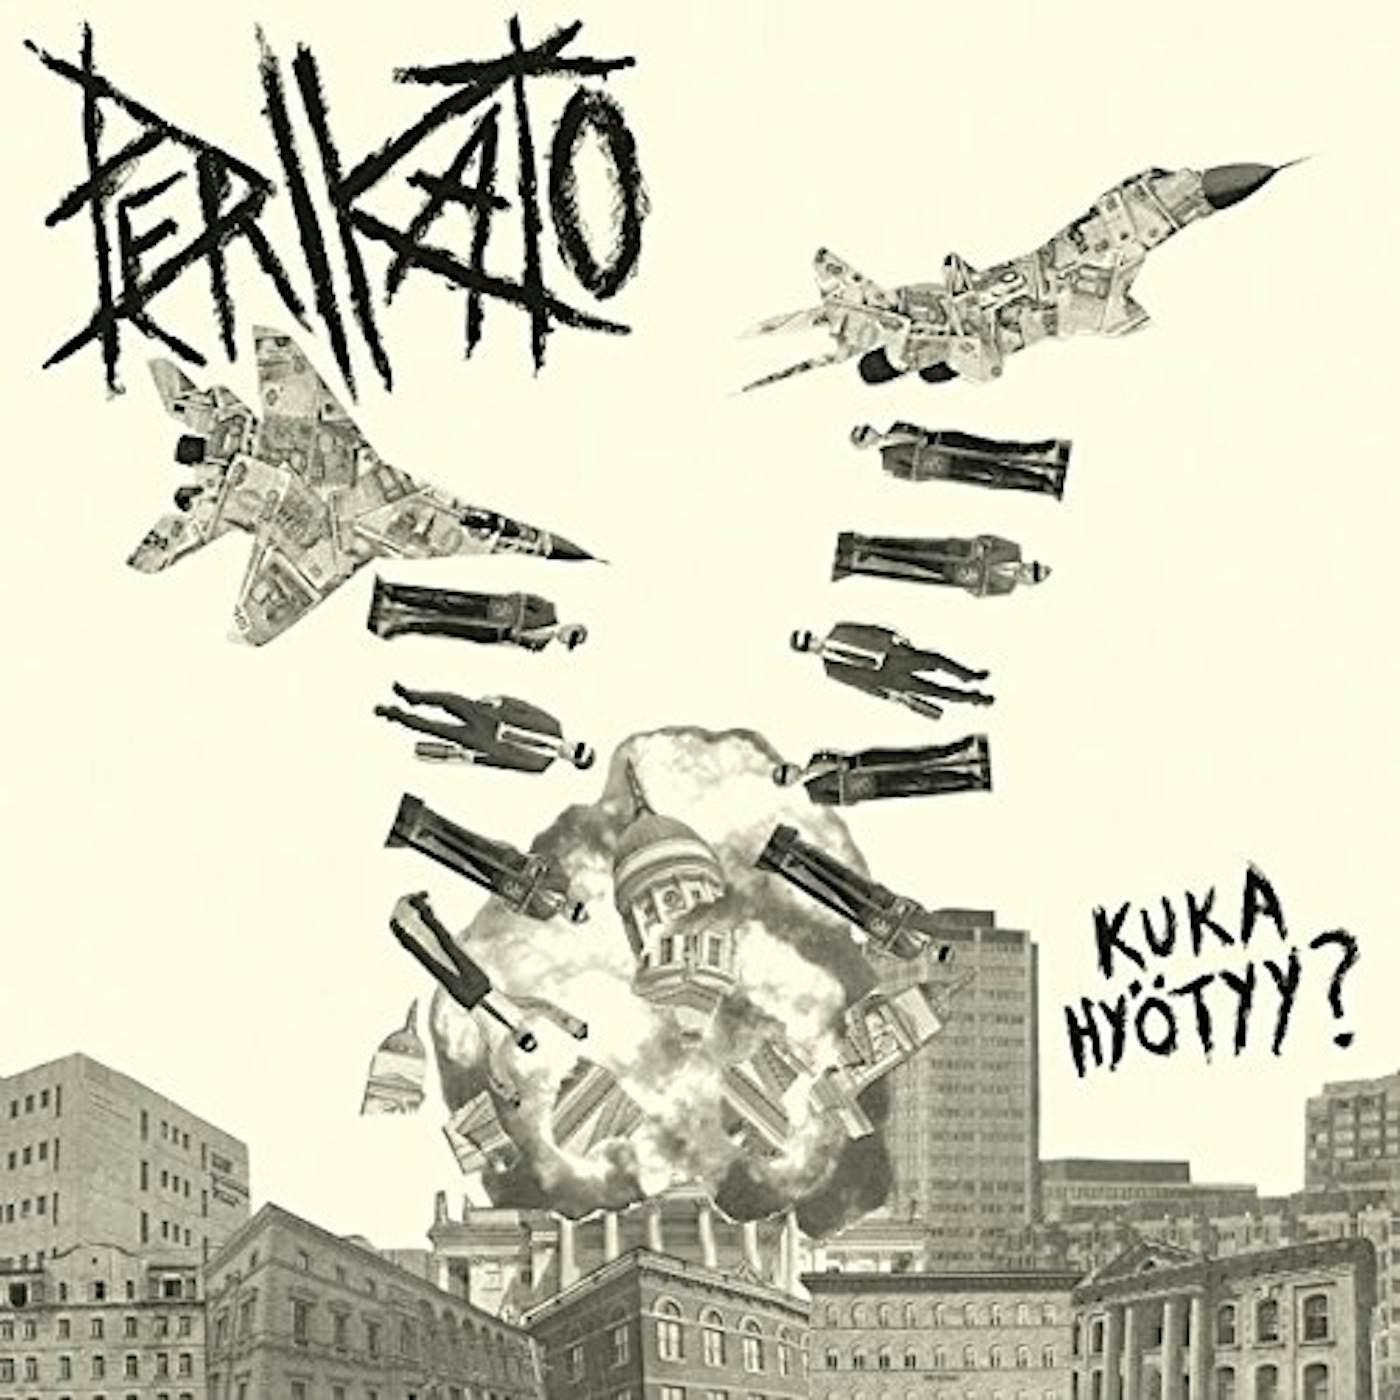 Perikato KUKA HYOTYY Vinyl Record